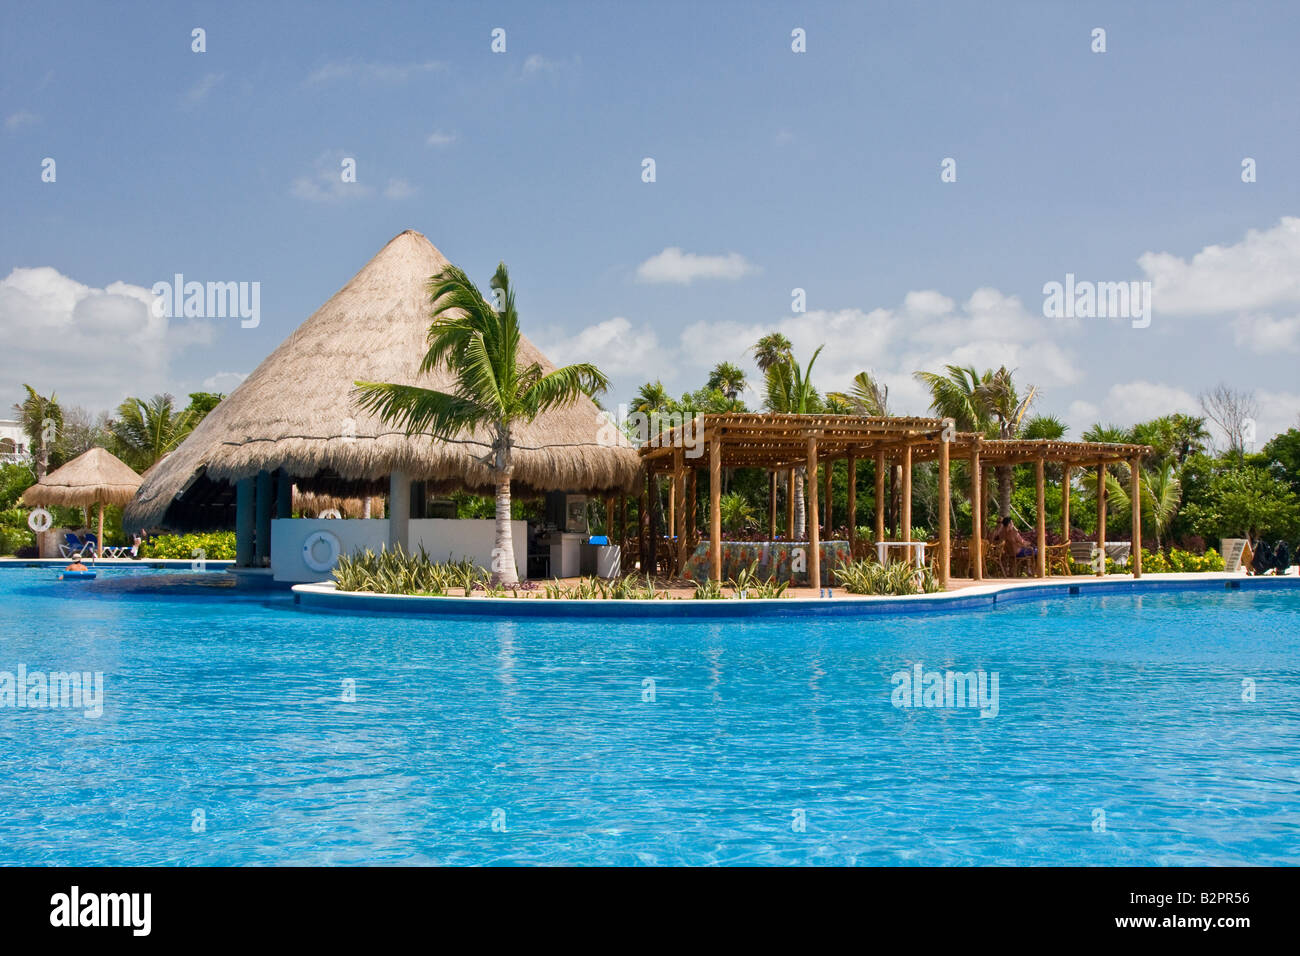 Pool-Bereich der Luxus-Resort-Hotels in Riviera Maya, Mexiko. Riviera Maya ist berühmt für seine groß angelegte all-inclusive resorts Stockfoto